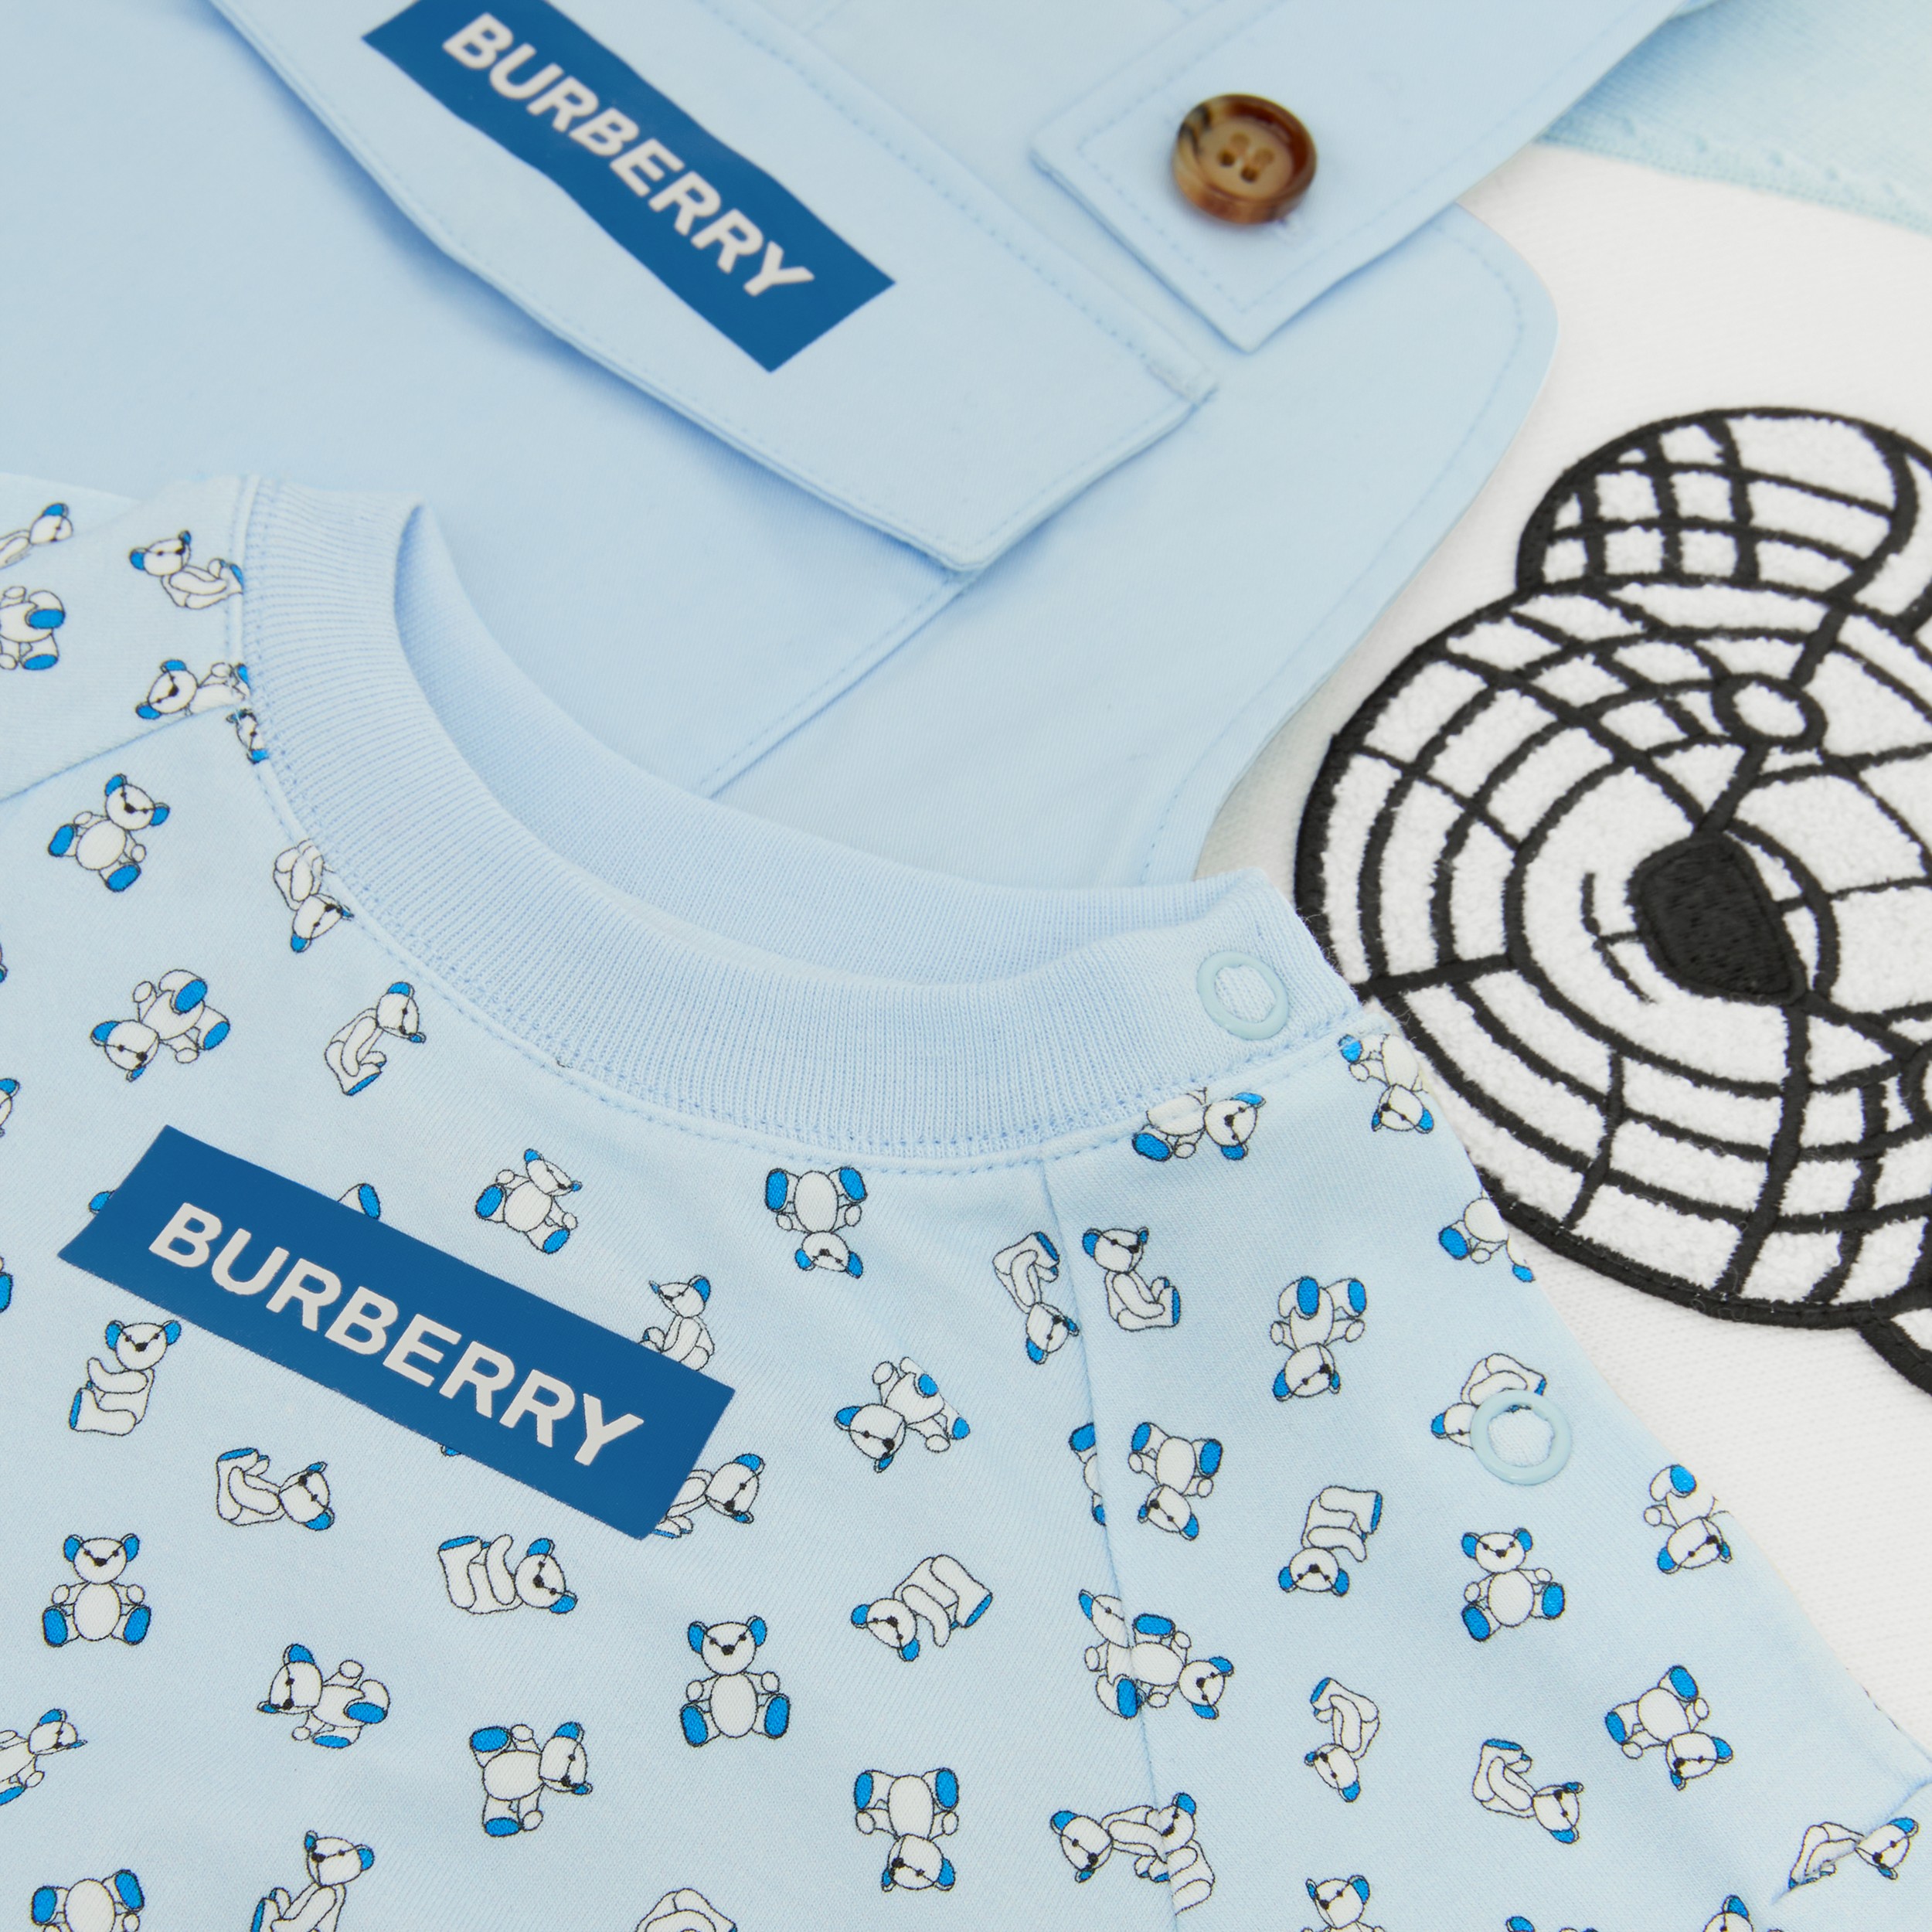 Thomas 泰迪熊图案棉质三件套婴儿礼品套装 (浅蓝色) - 儿童 | Burberry® 博柏利官网 - 2